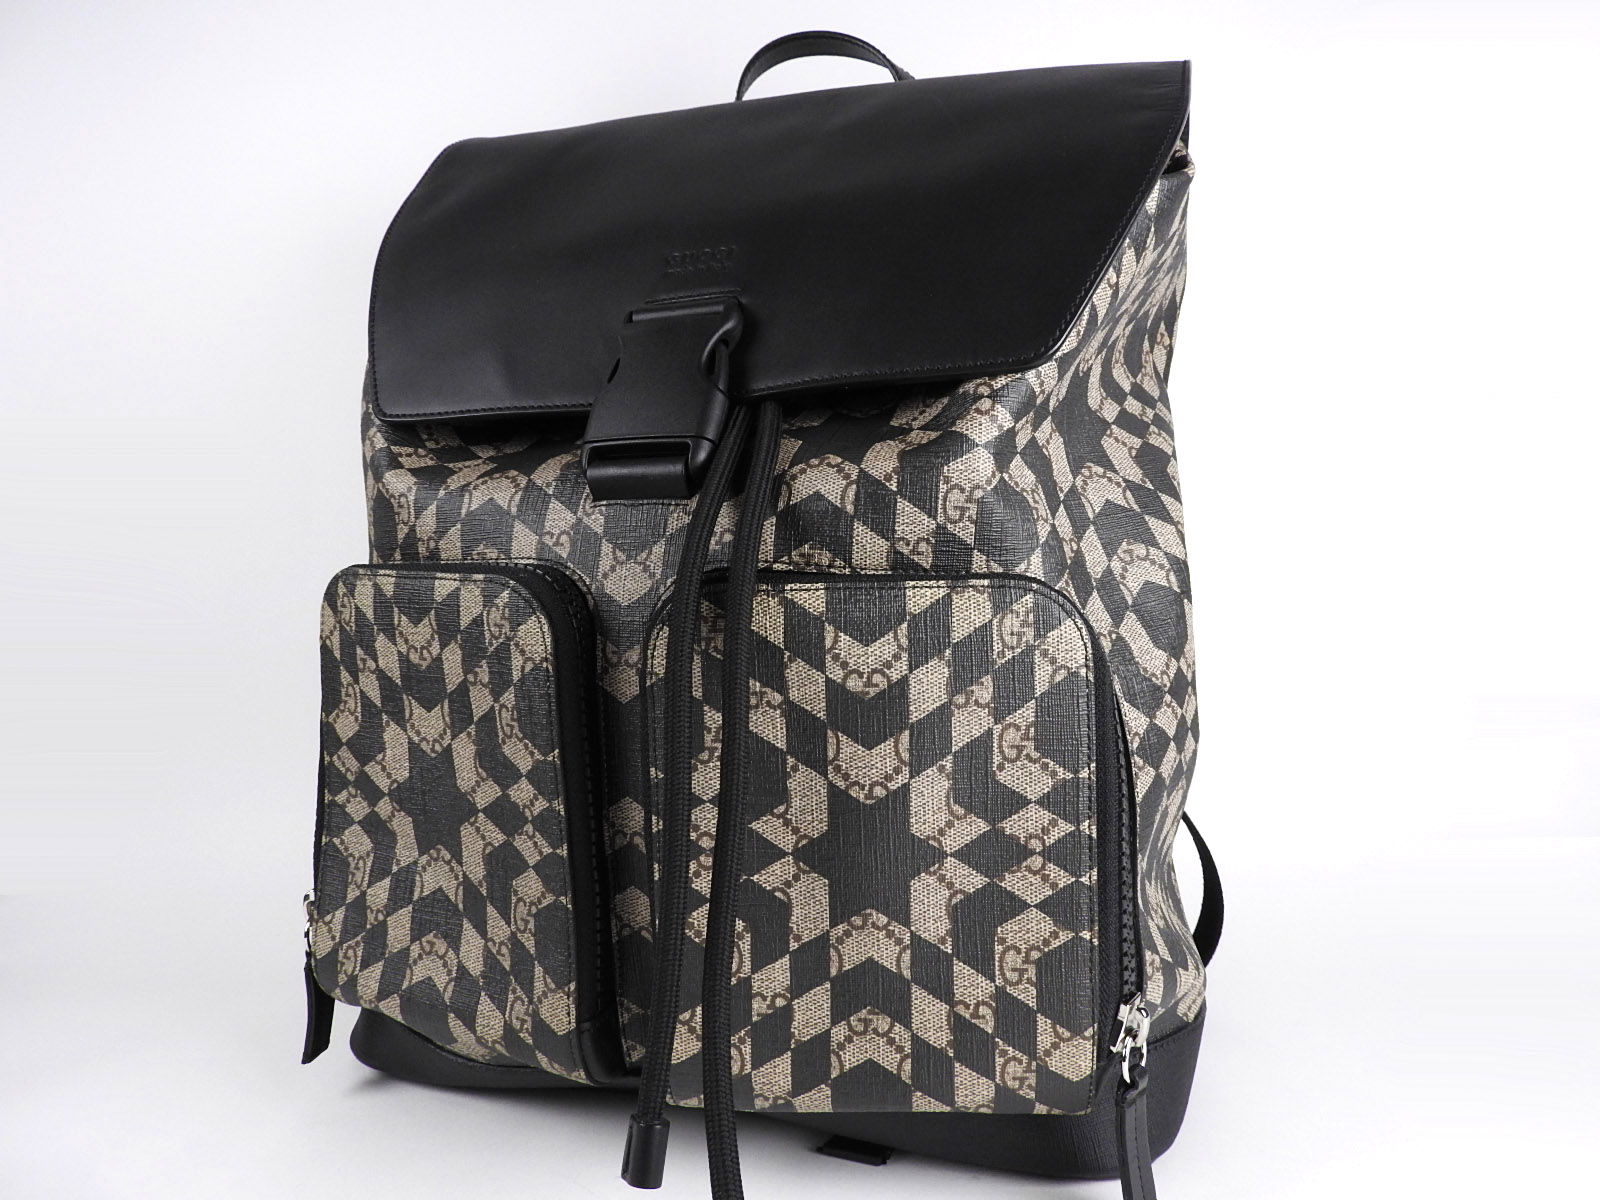 GUCCI GG Caleido Supreme Backpack Bag PVC Leather Beige Brown Black 406369 V2175 | eBay